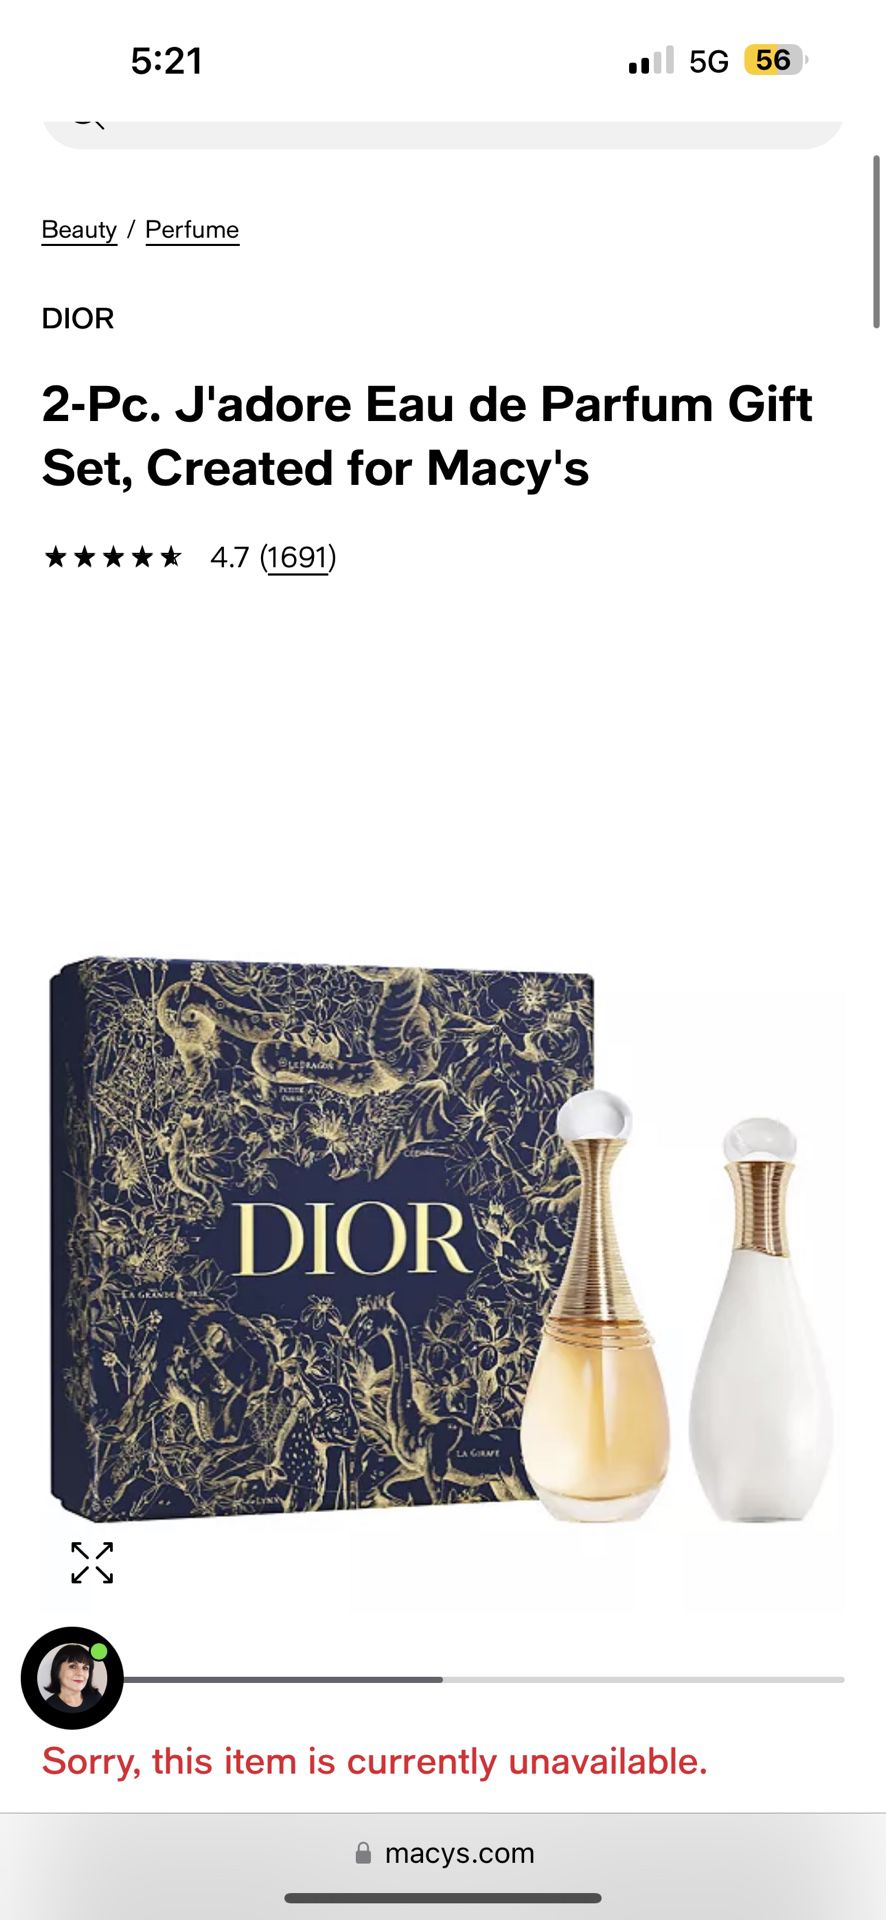 DIOR 3-Pc. J'adore Eau de Parfum Gift Set - Macy's